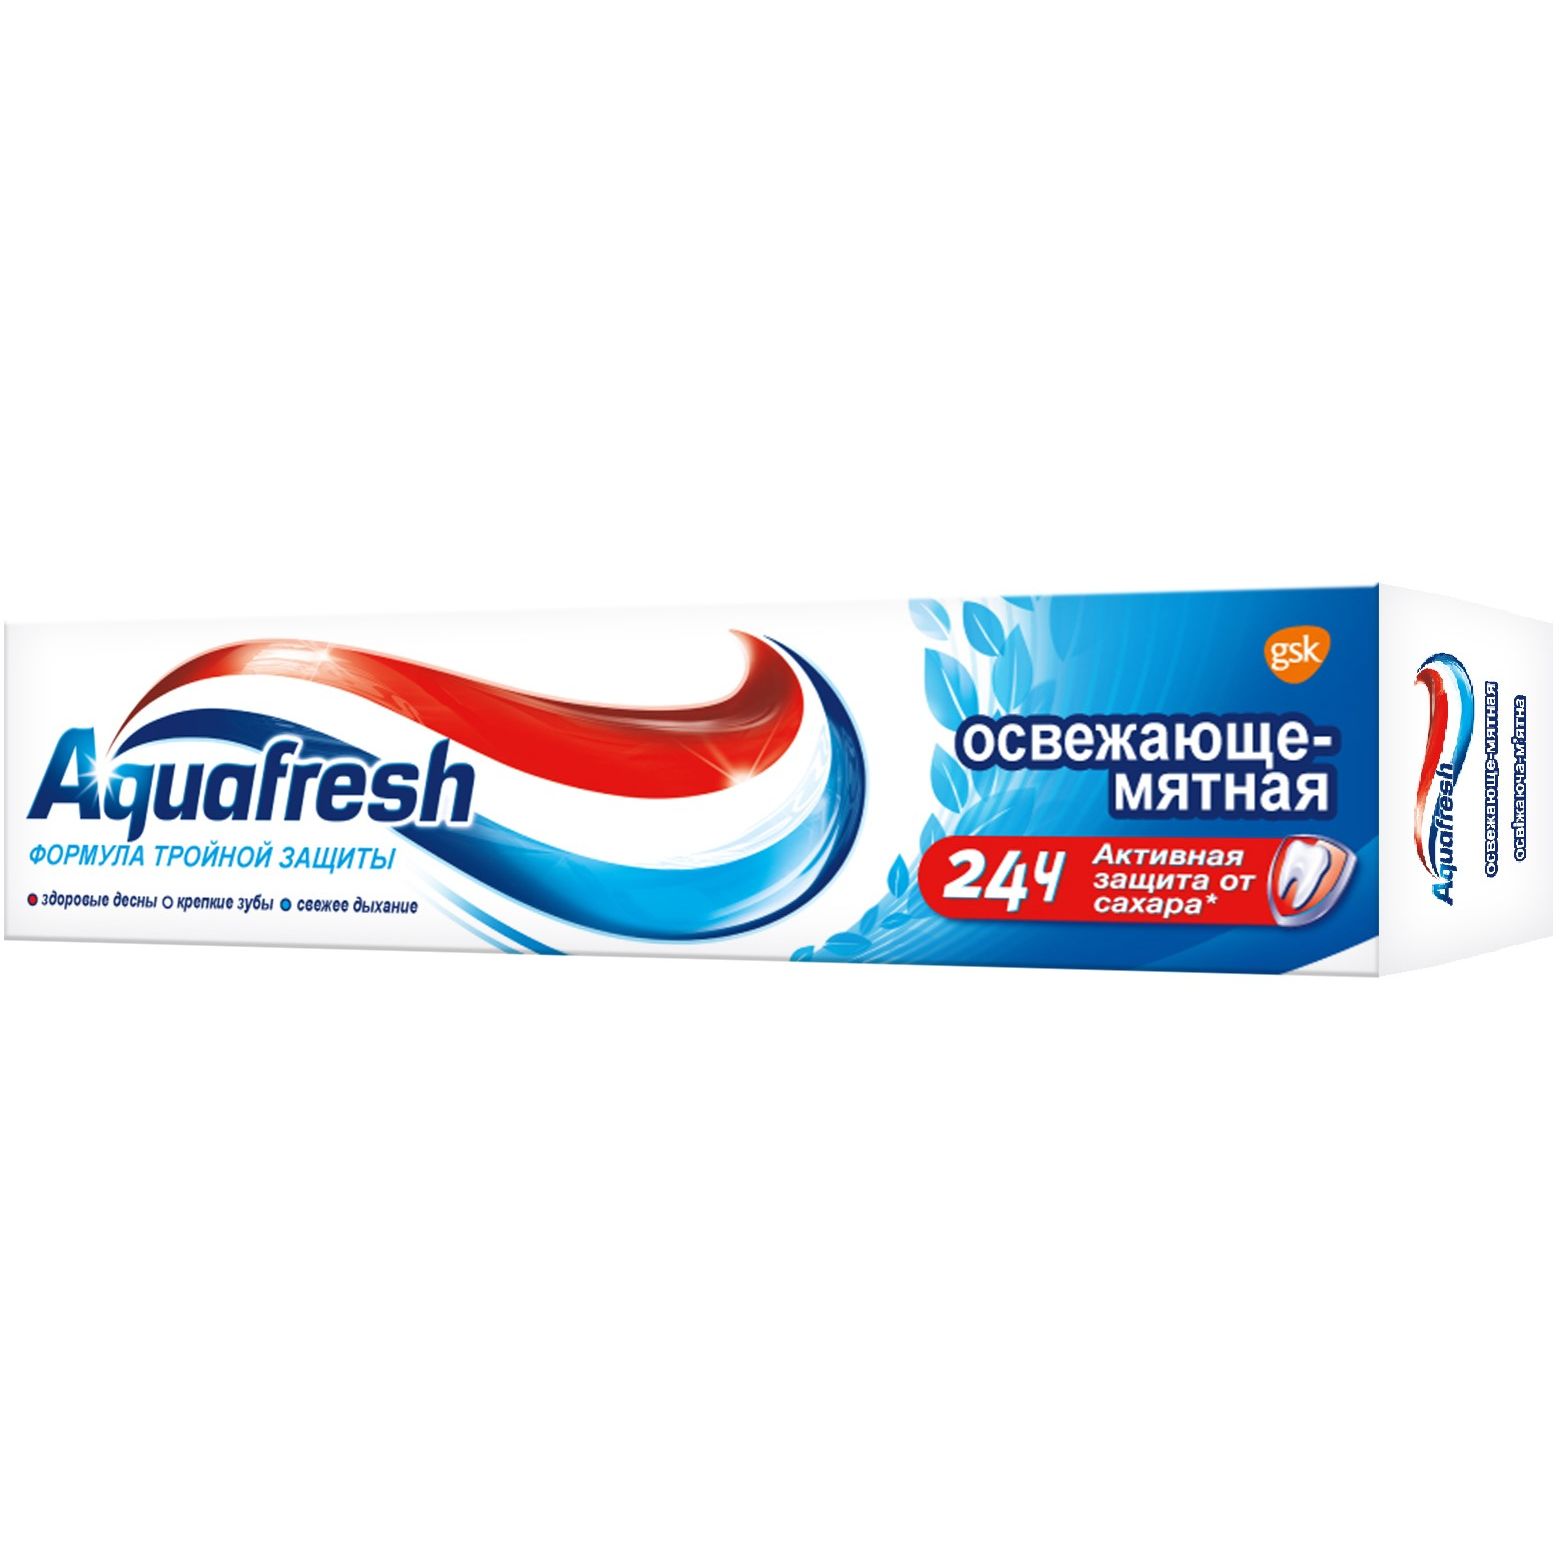 Зубная паста Aquafresh Освежающе-мятная семейная 100 мл - фото 3